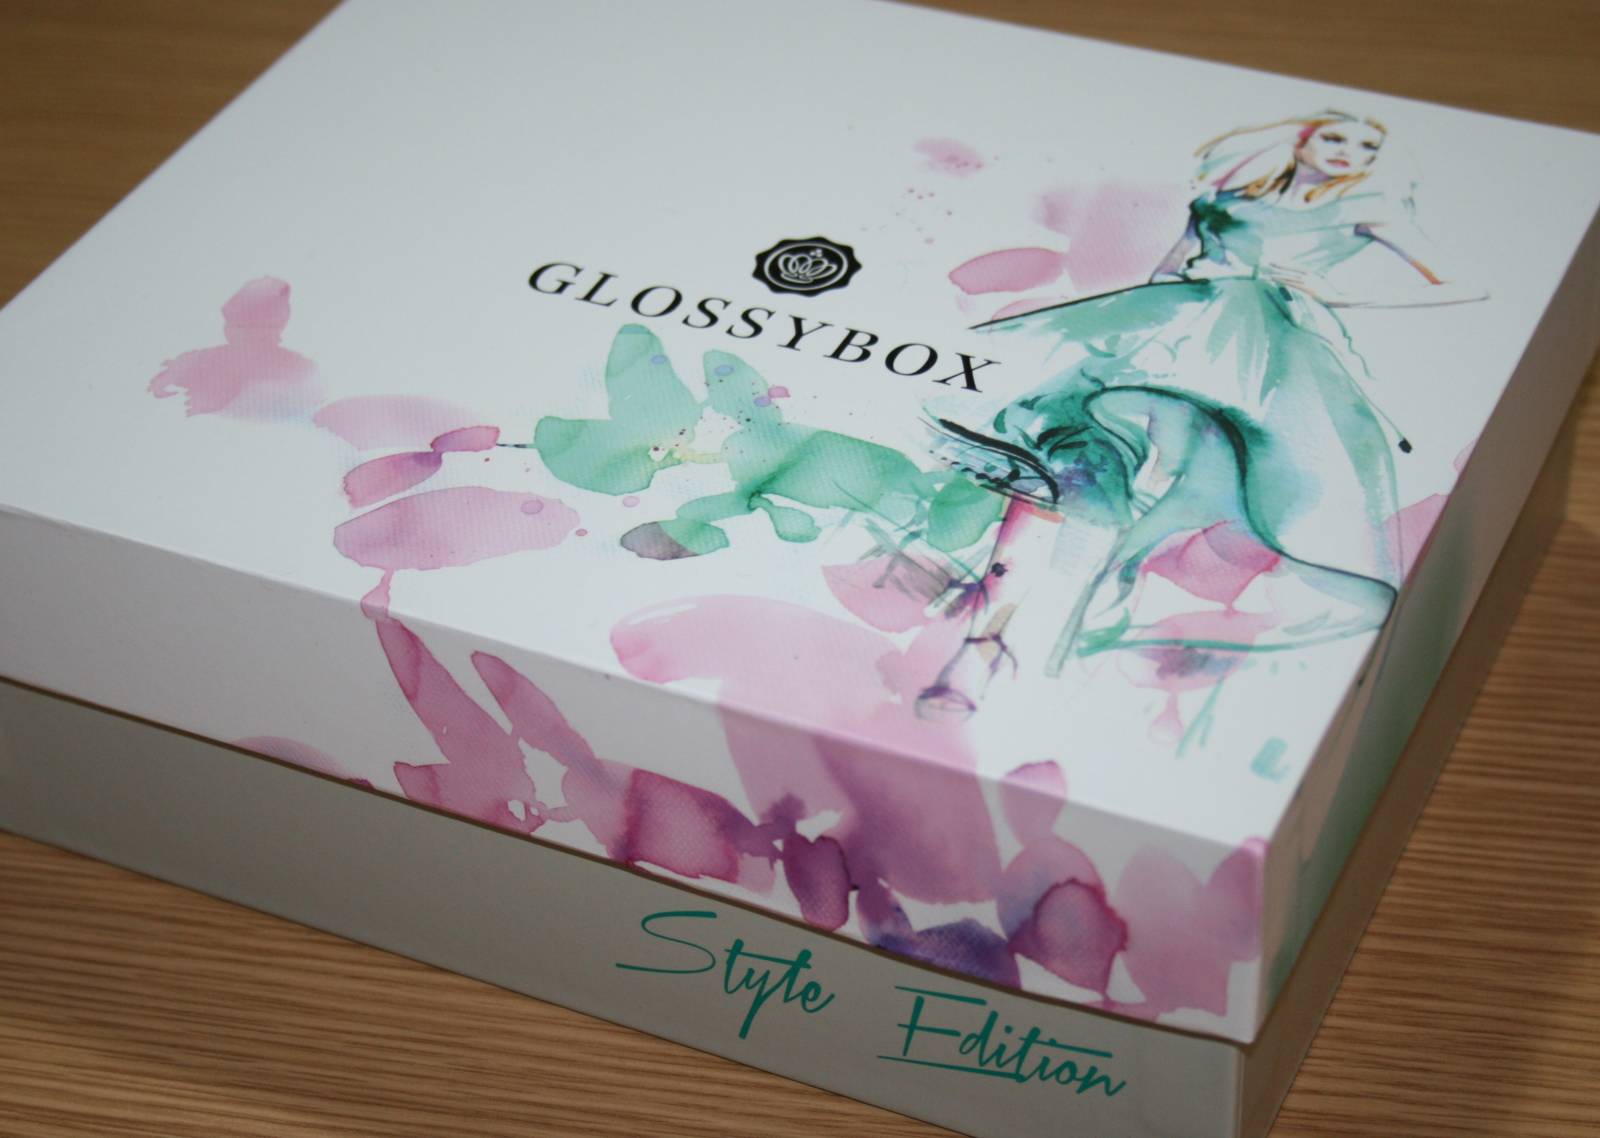 Glossybox September 2015